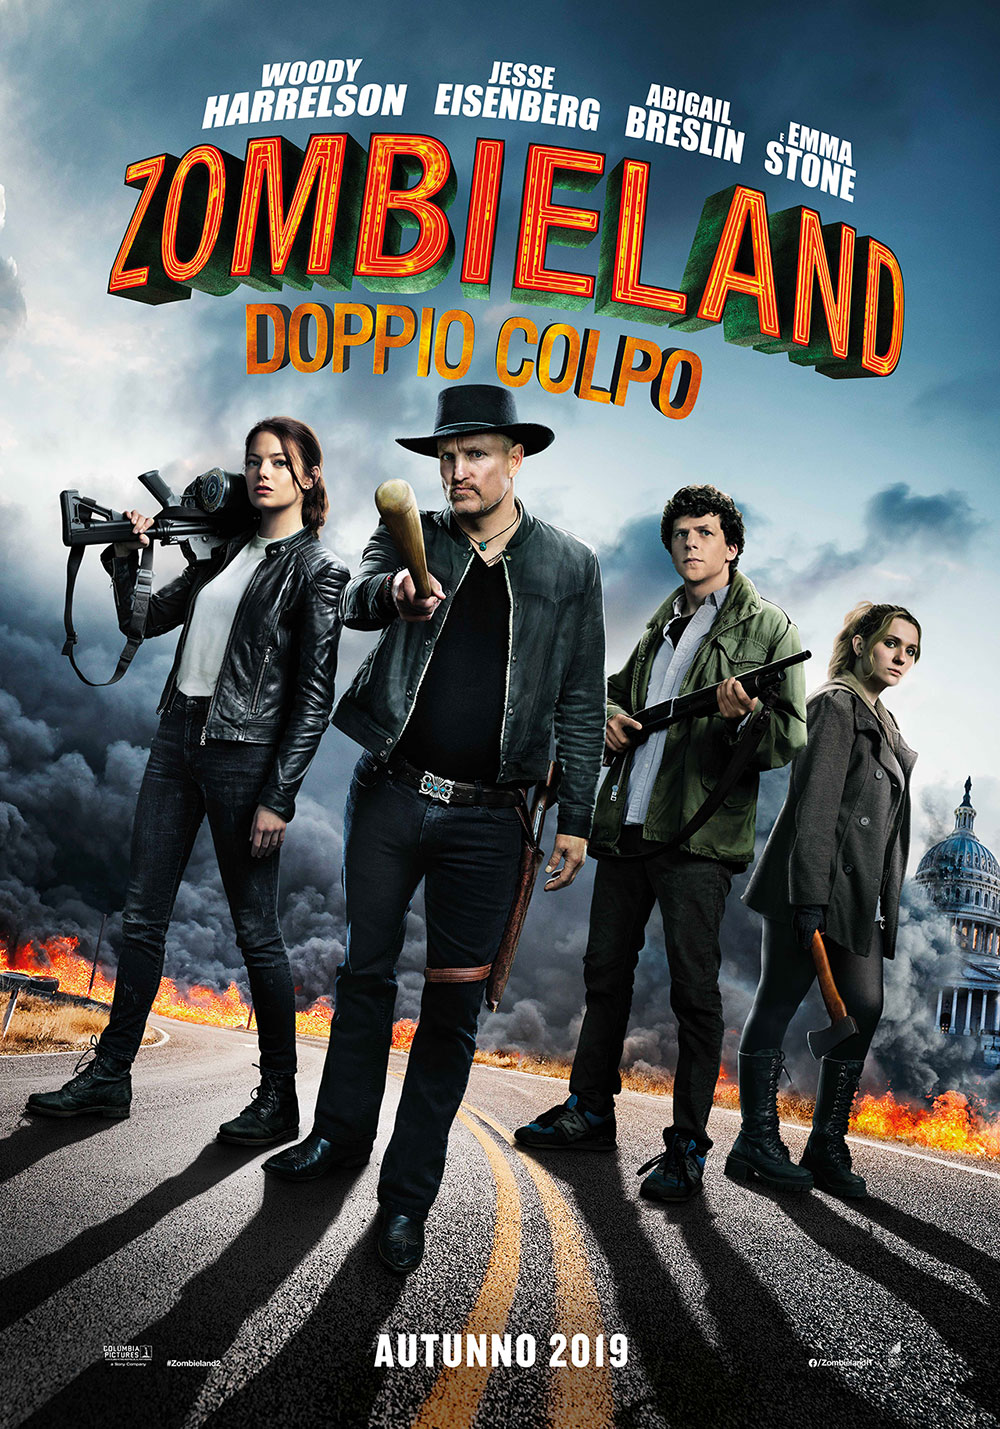  Dall'articolo: Zombieland - Doppio Colpo, il poster italiano del film.